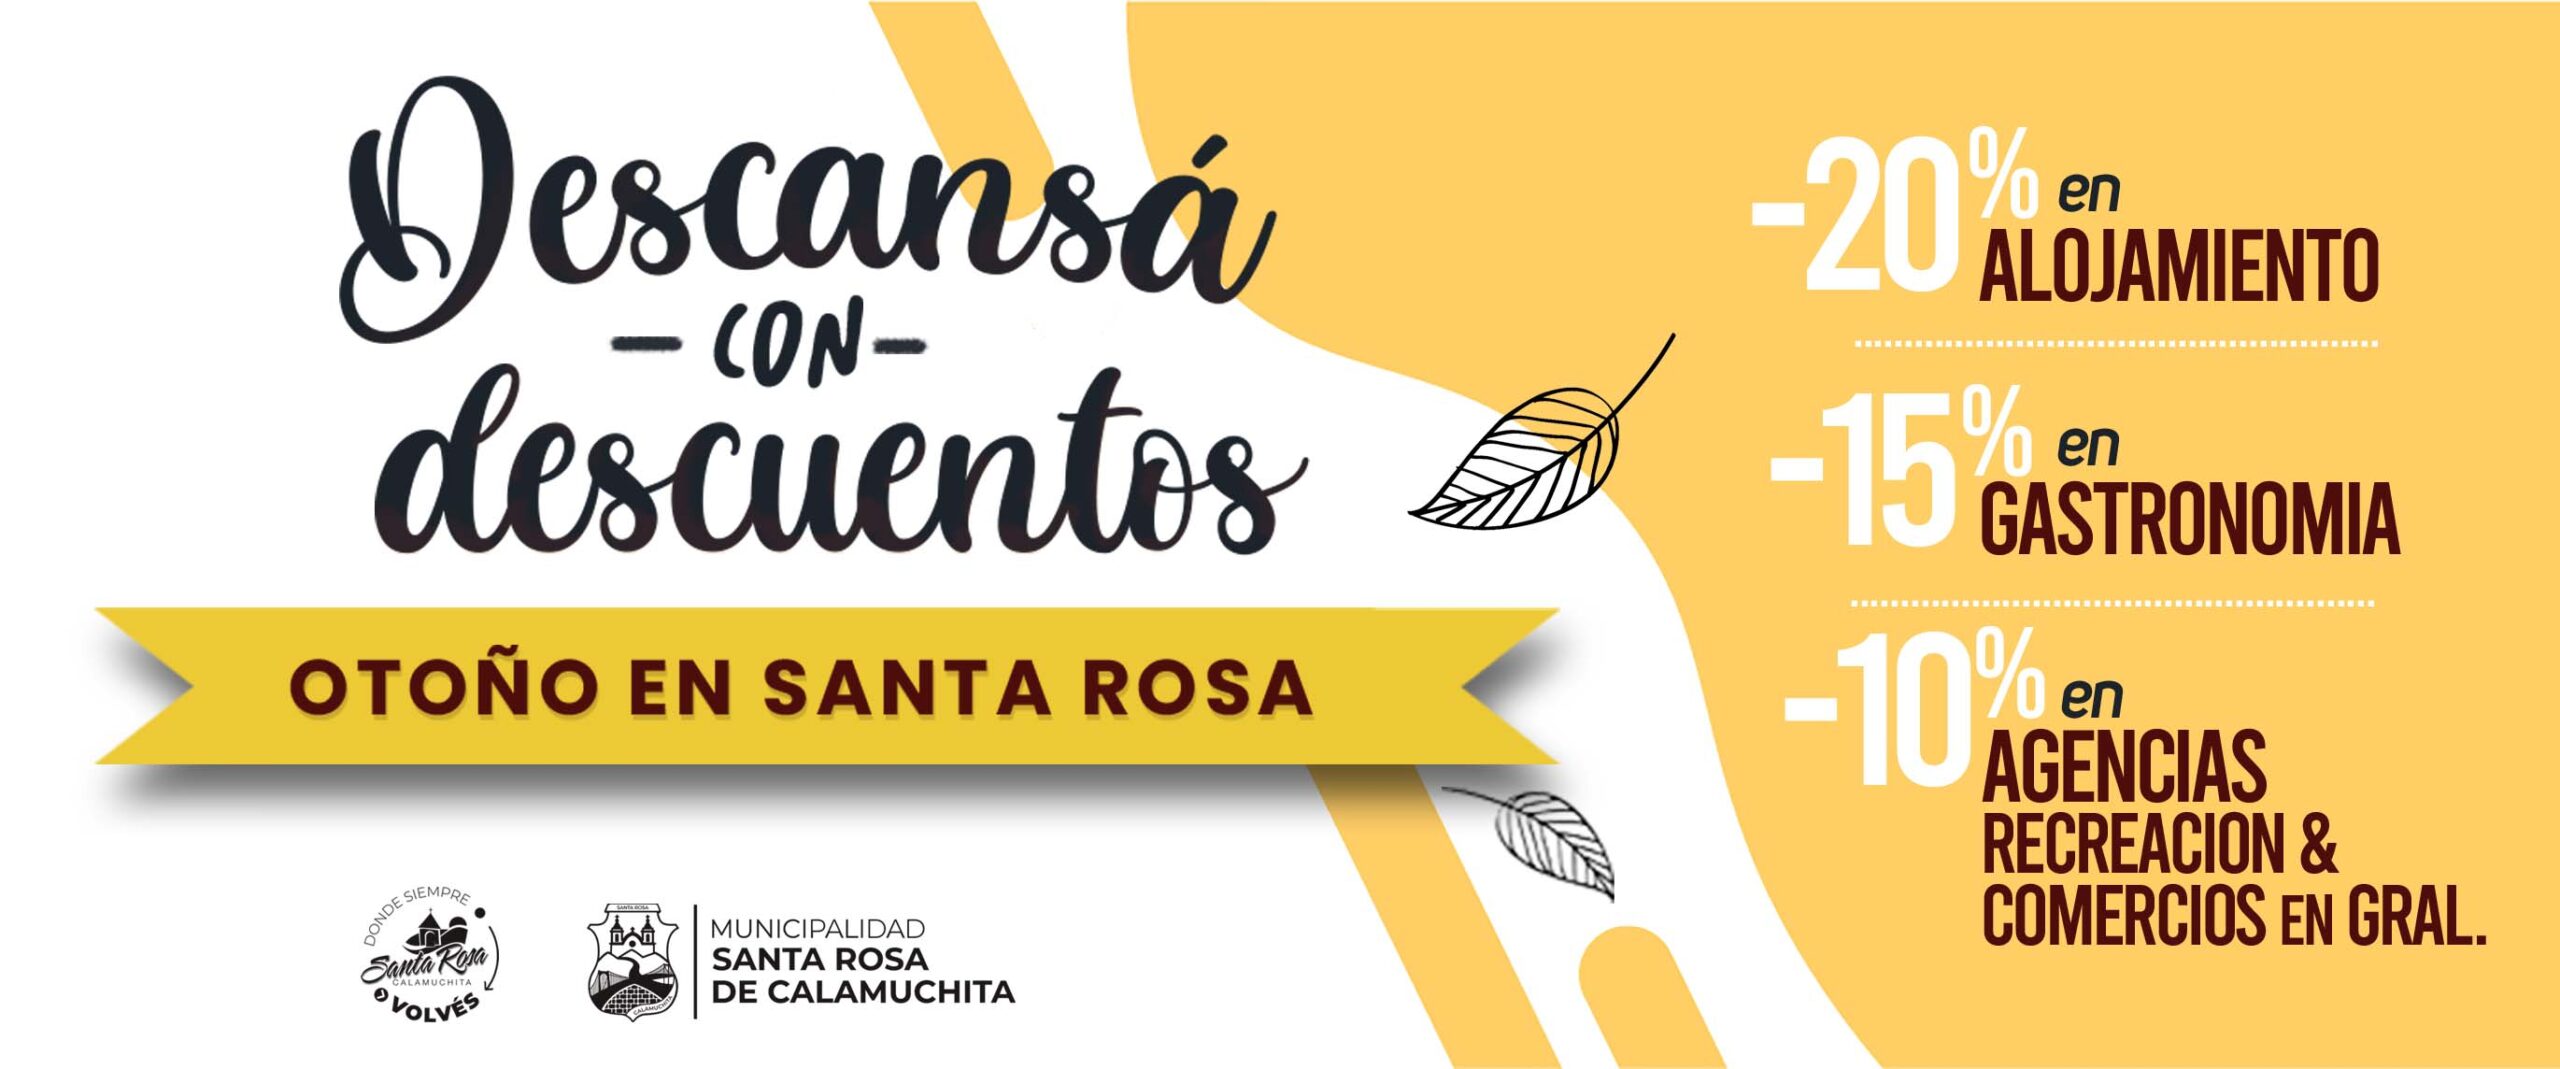 En este momento estás viendo “Descansá con Descuentos”: promo para vivir el otoño en Santa Rosa